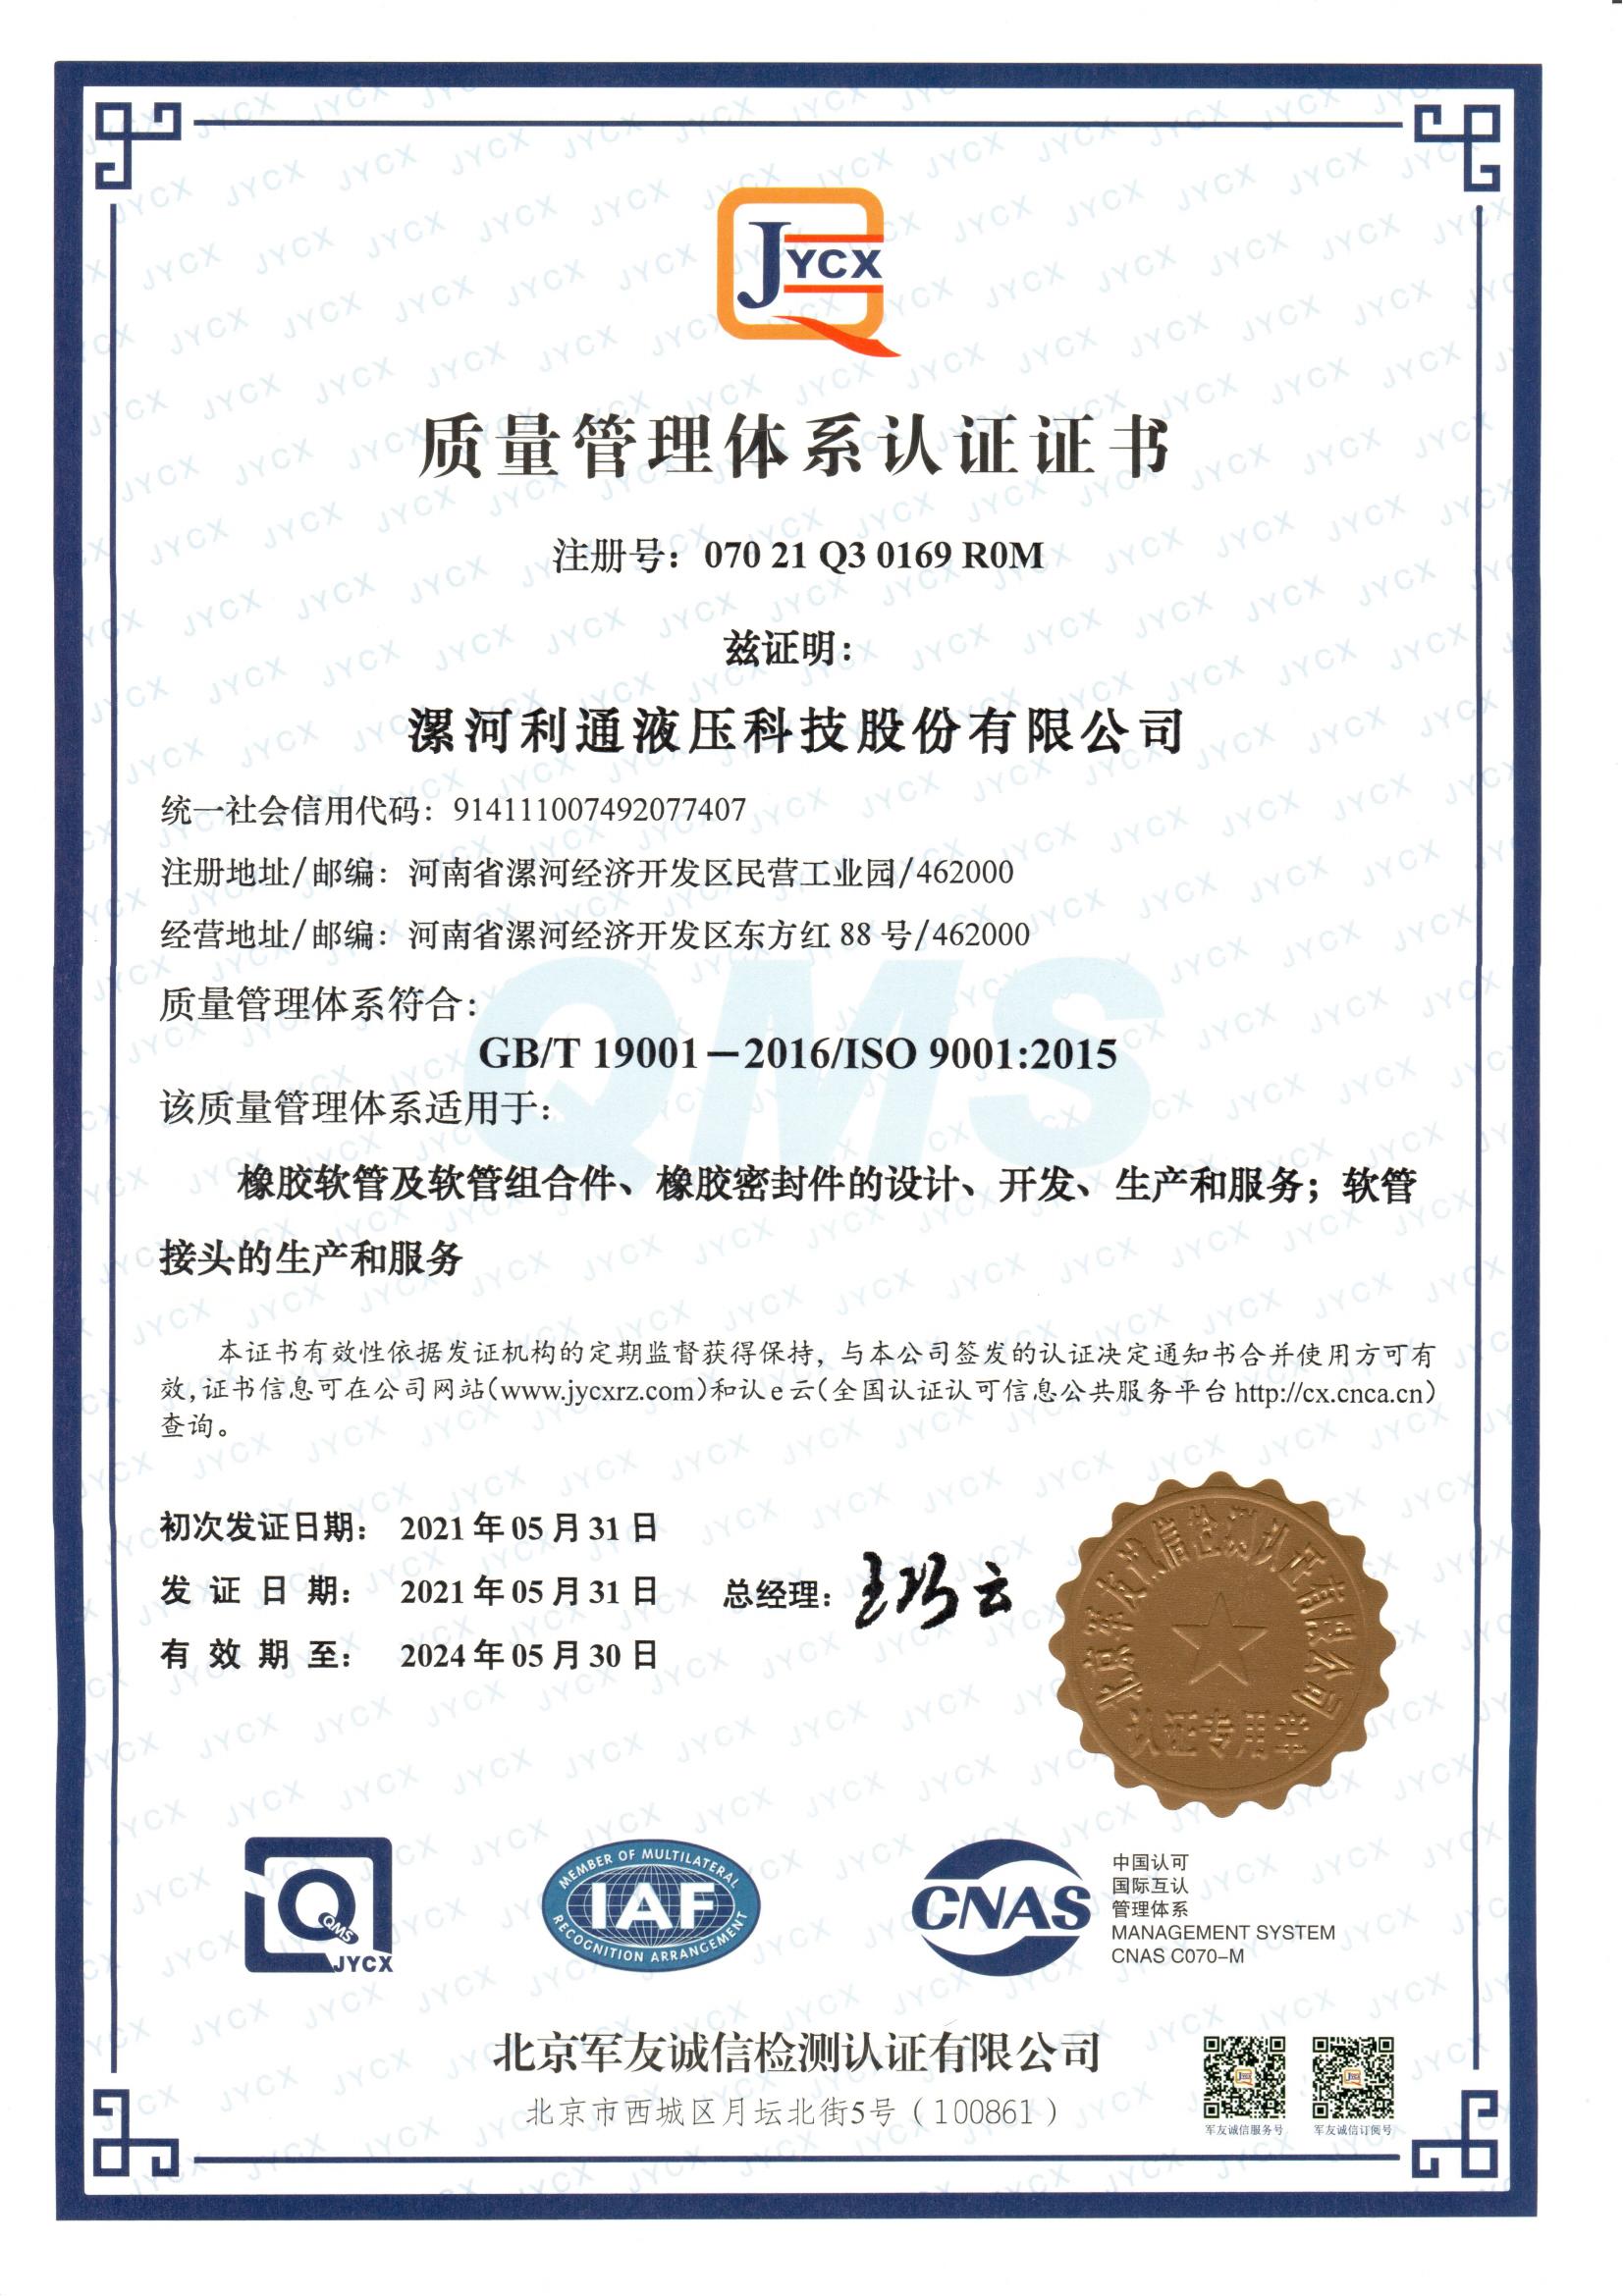 4 质量管理体系认证证书（军友）_01.jpg